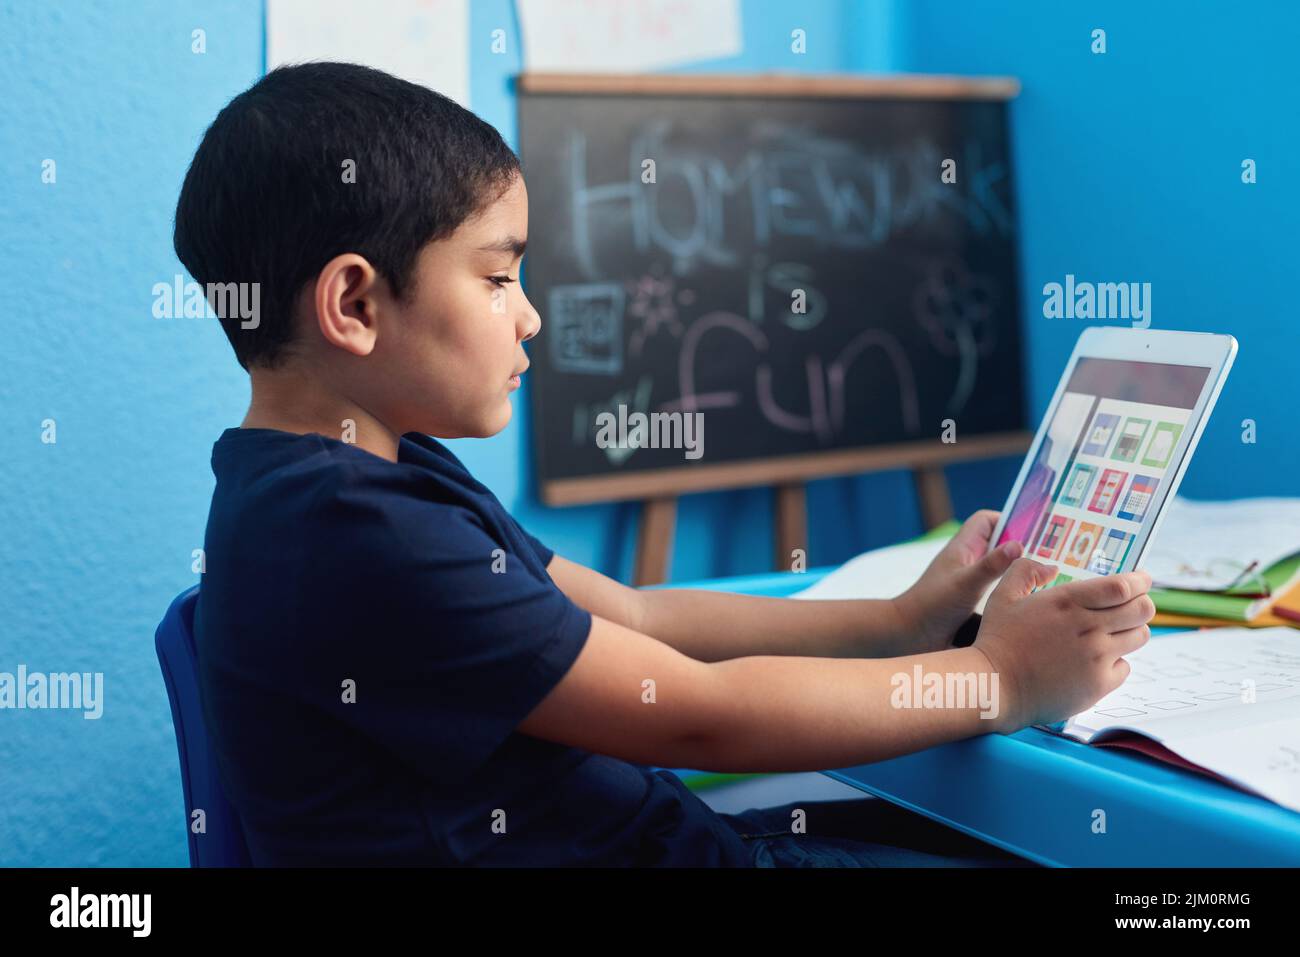 Non sostituisce un insegnante ma è piuttosto vicino. Un ragazzino adorabile che usa un tablet digitale per completare un incarico scolastico alla sua scrivania. Foto Stock